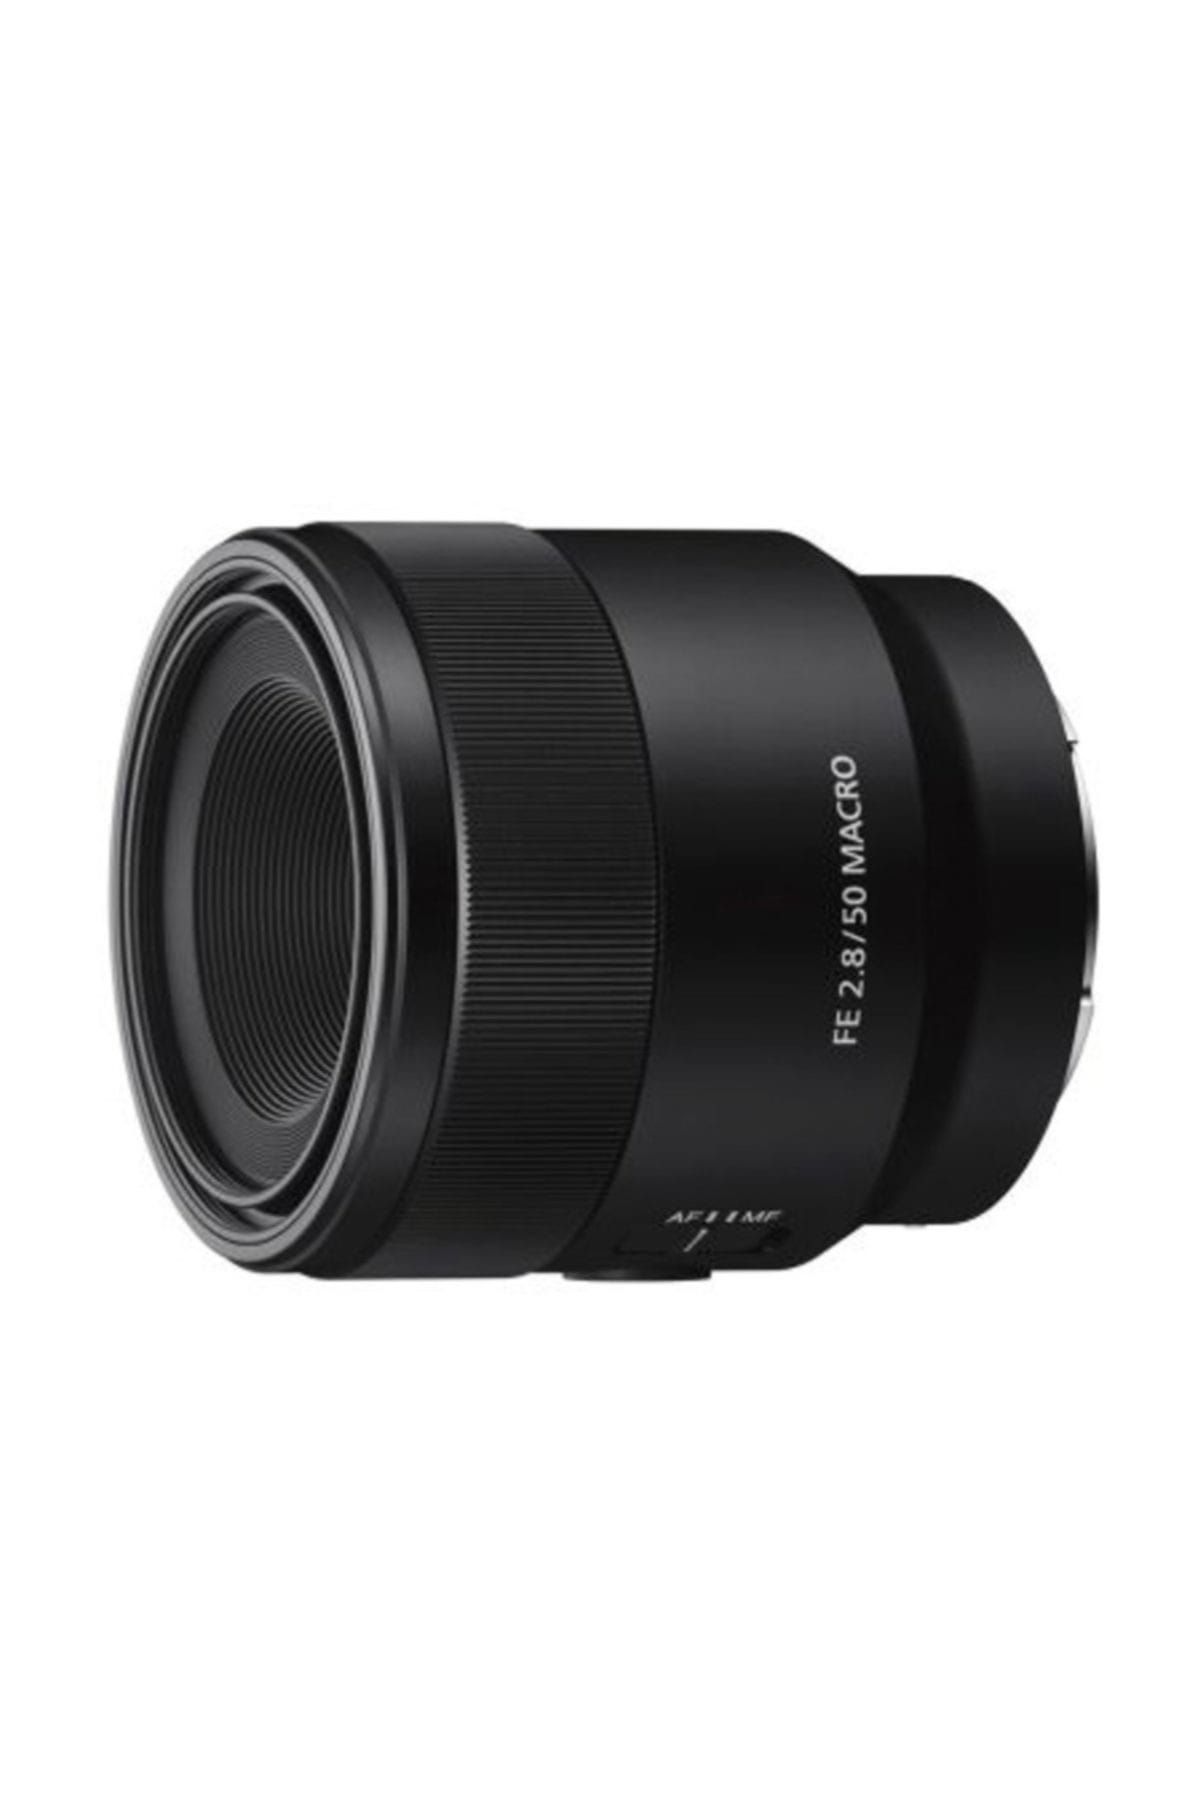 Sony SEL 50mm F2,8 Full Frame Macro Lens